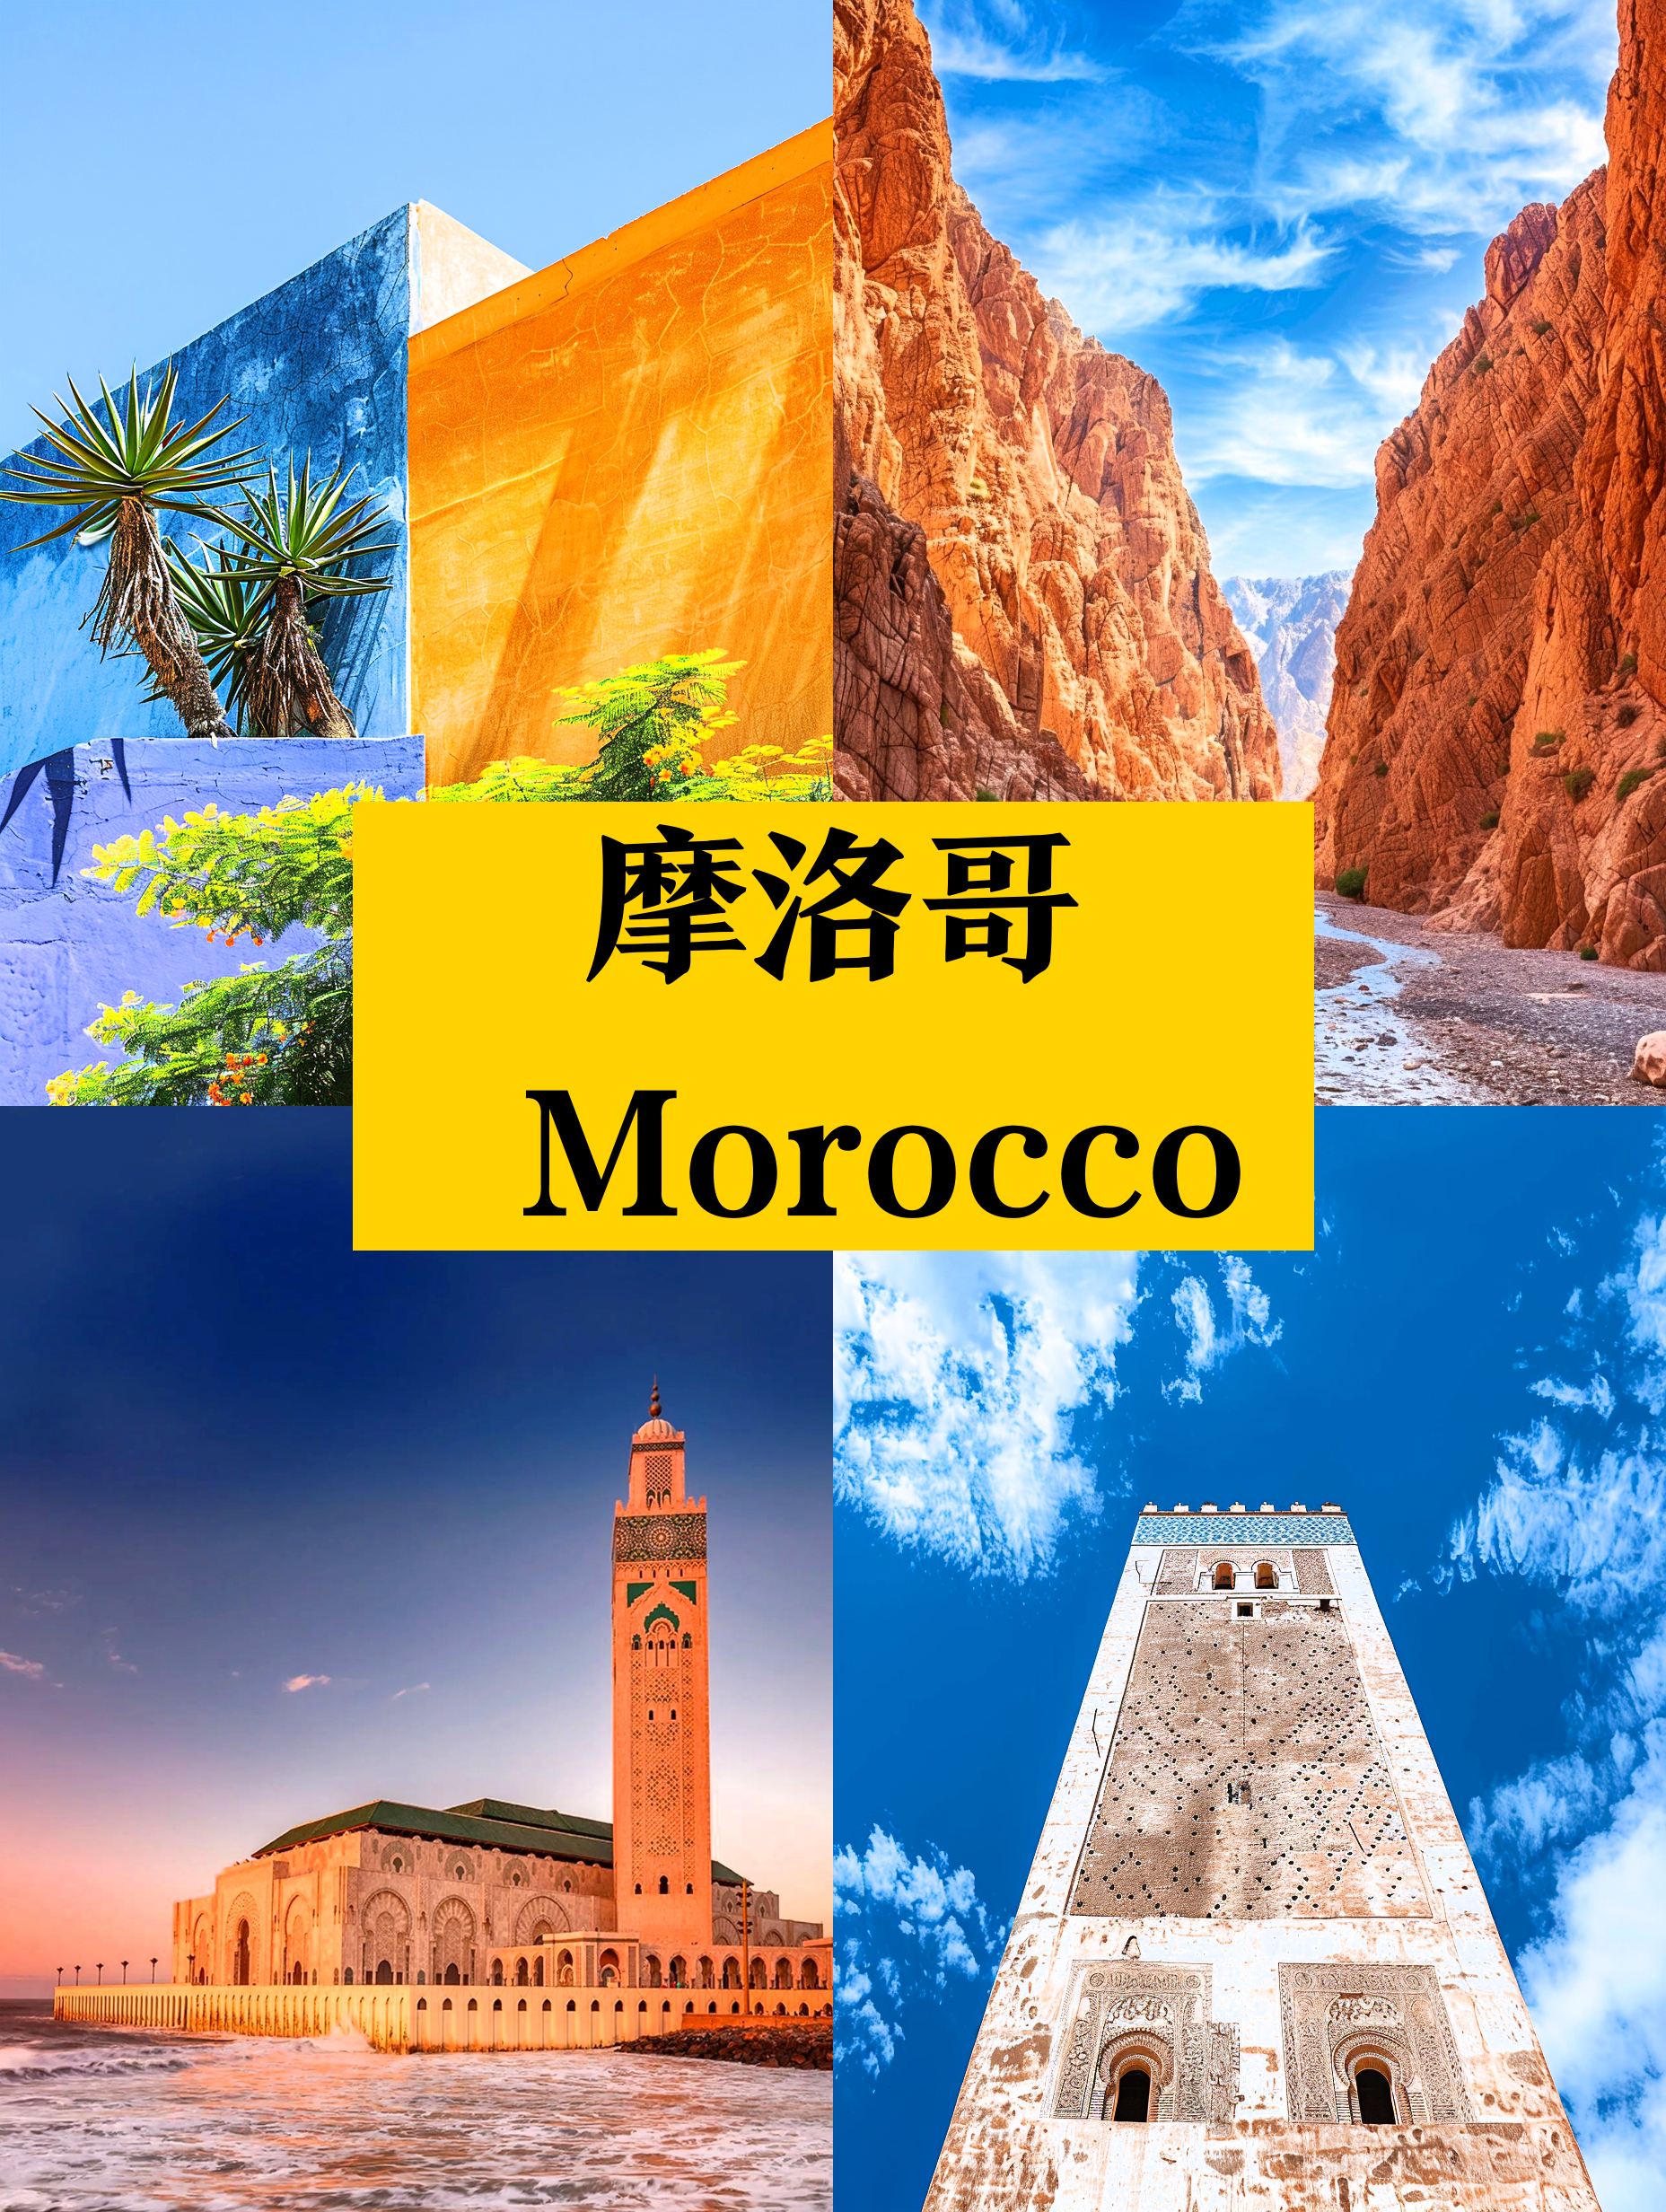 春天去摩洛哥❓3-6月是最佳时间👍🌸